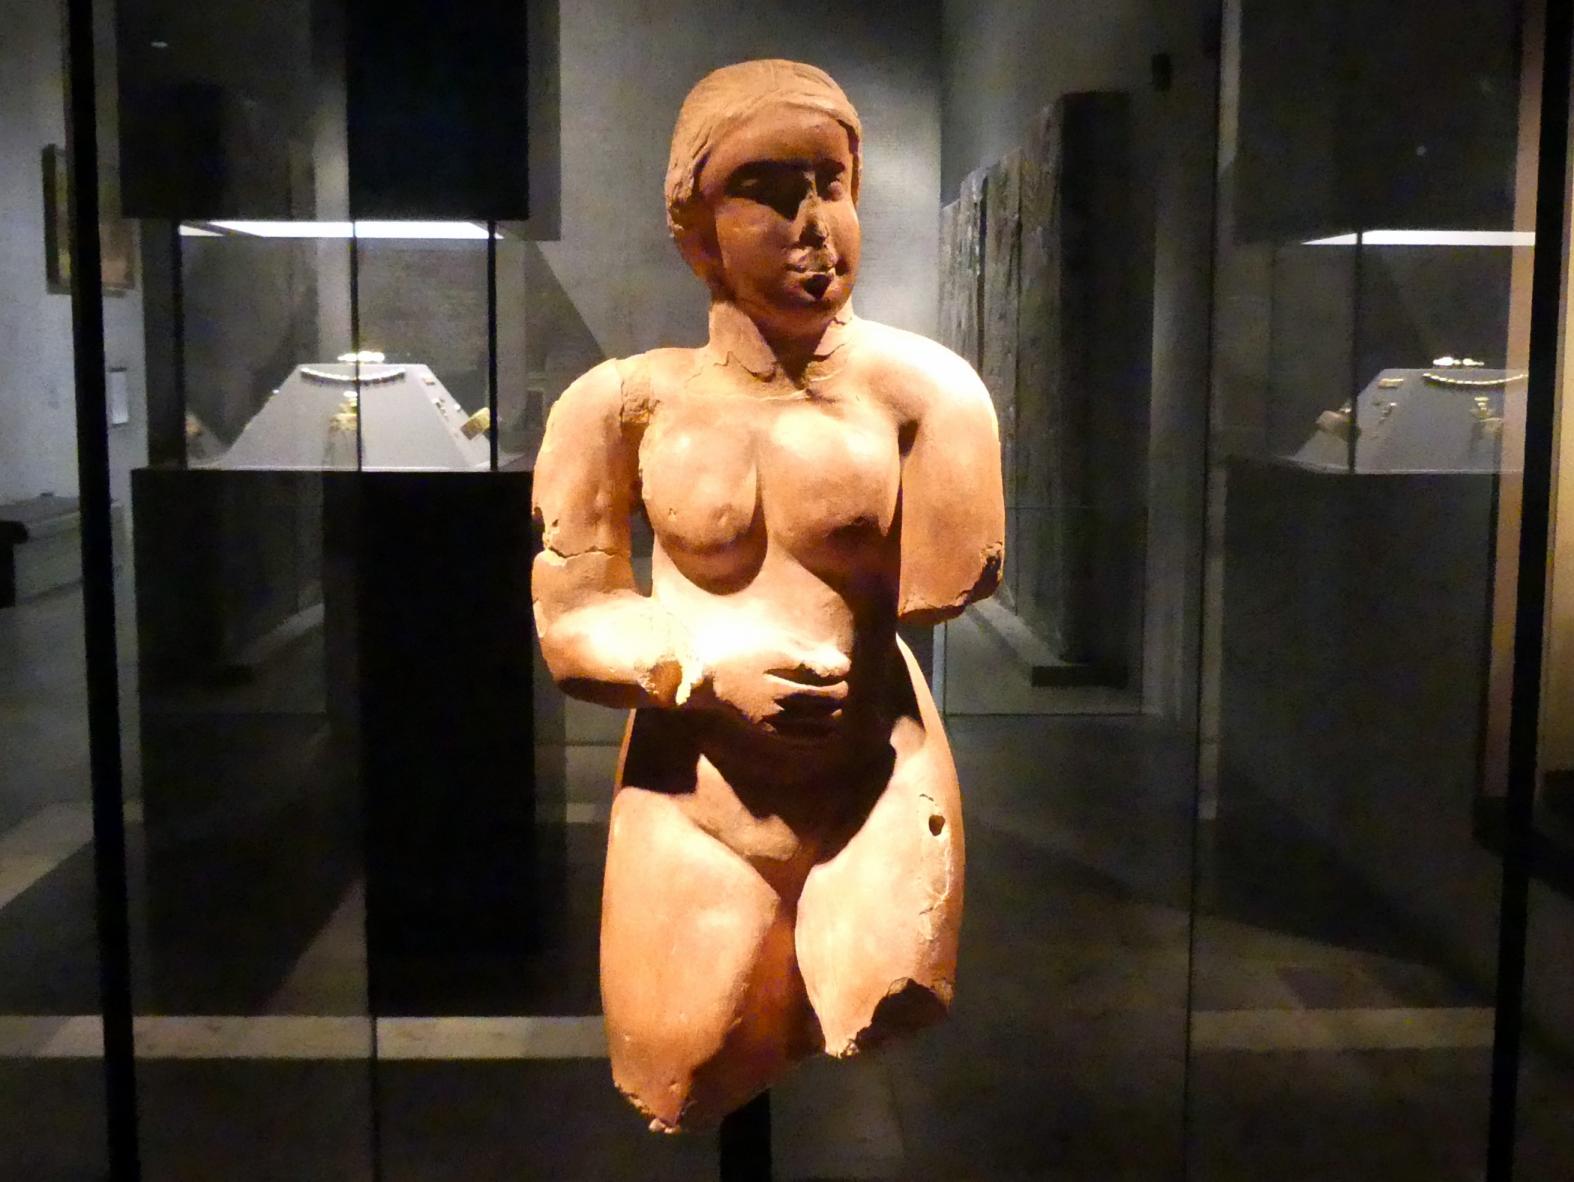 Standfigur einer Frau ("Meroitische Venus"), Meroitische Zeit, 200 v. Chr. - 500 n. Chr., 100 - 300, Bild 1/4